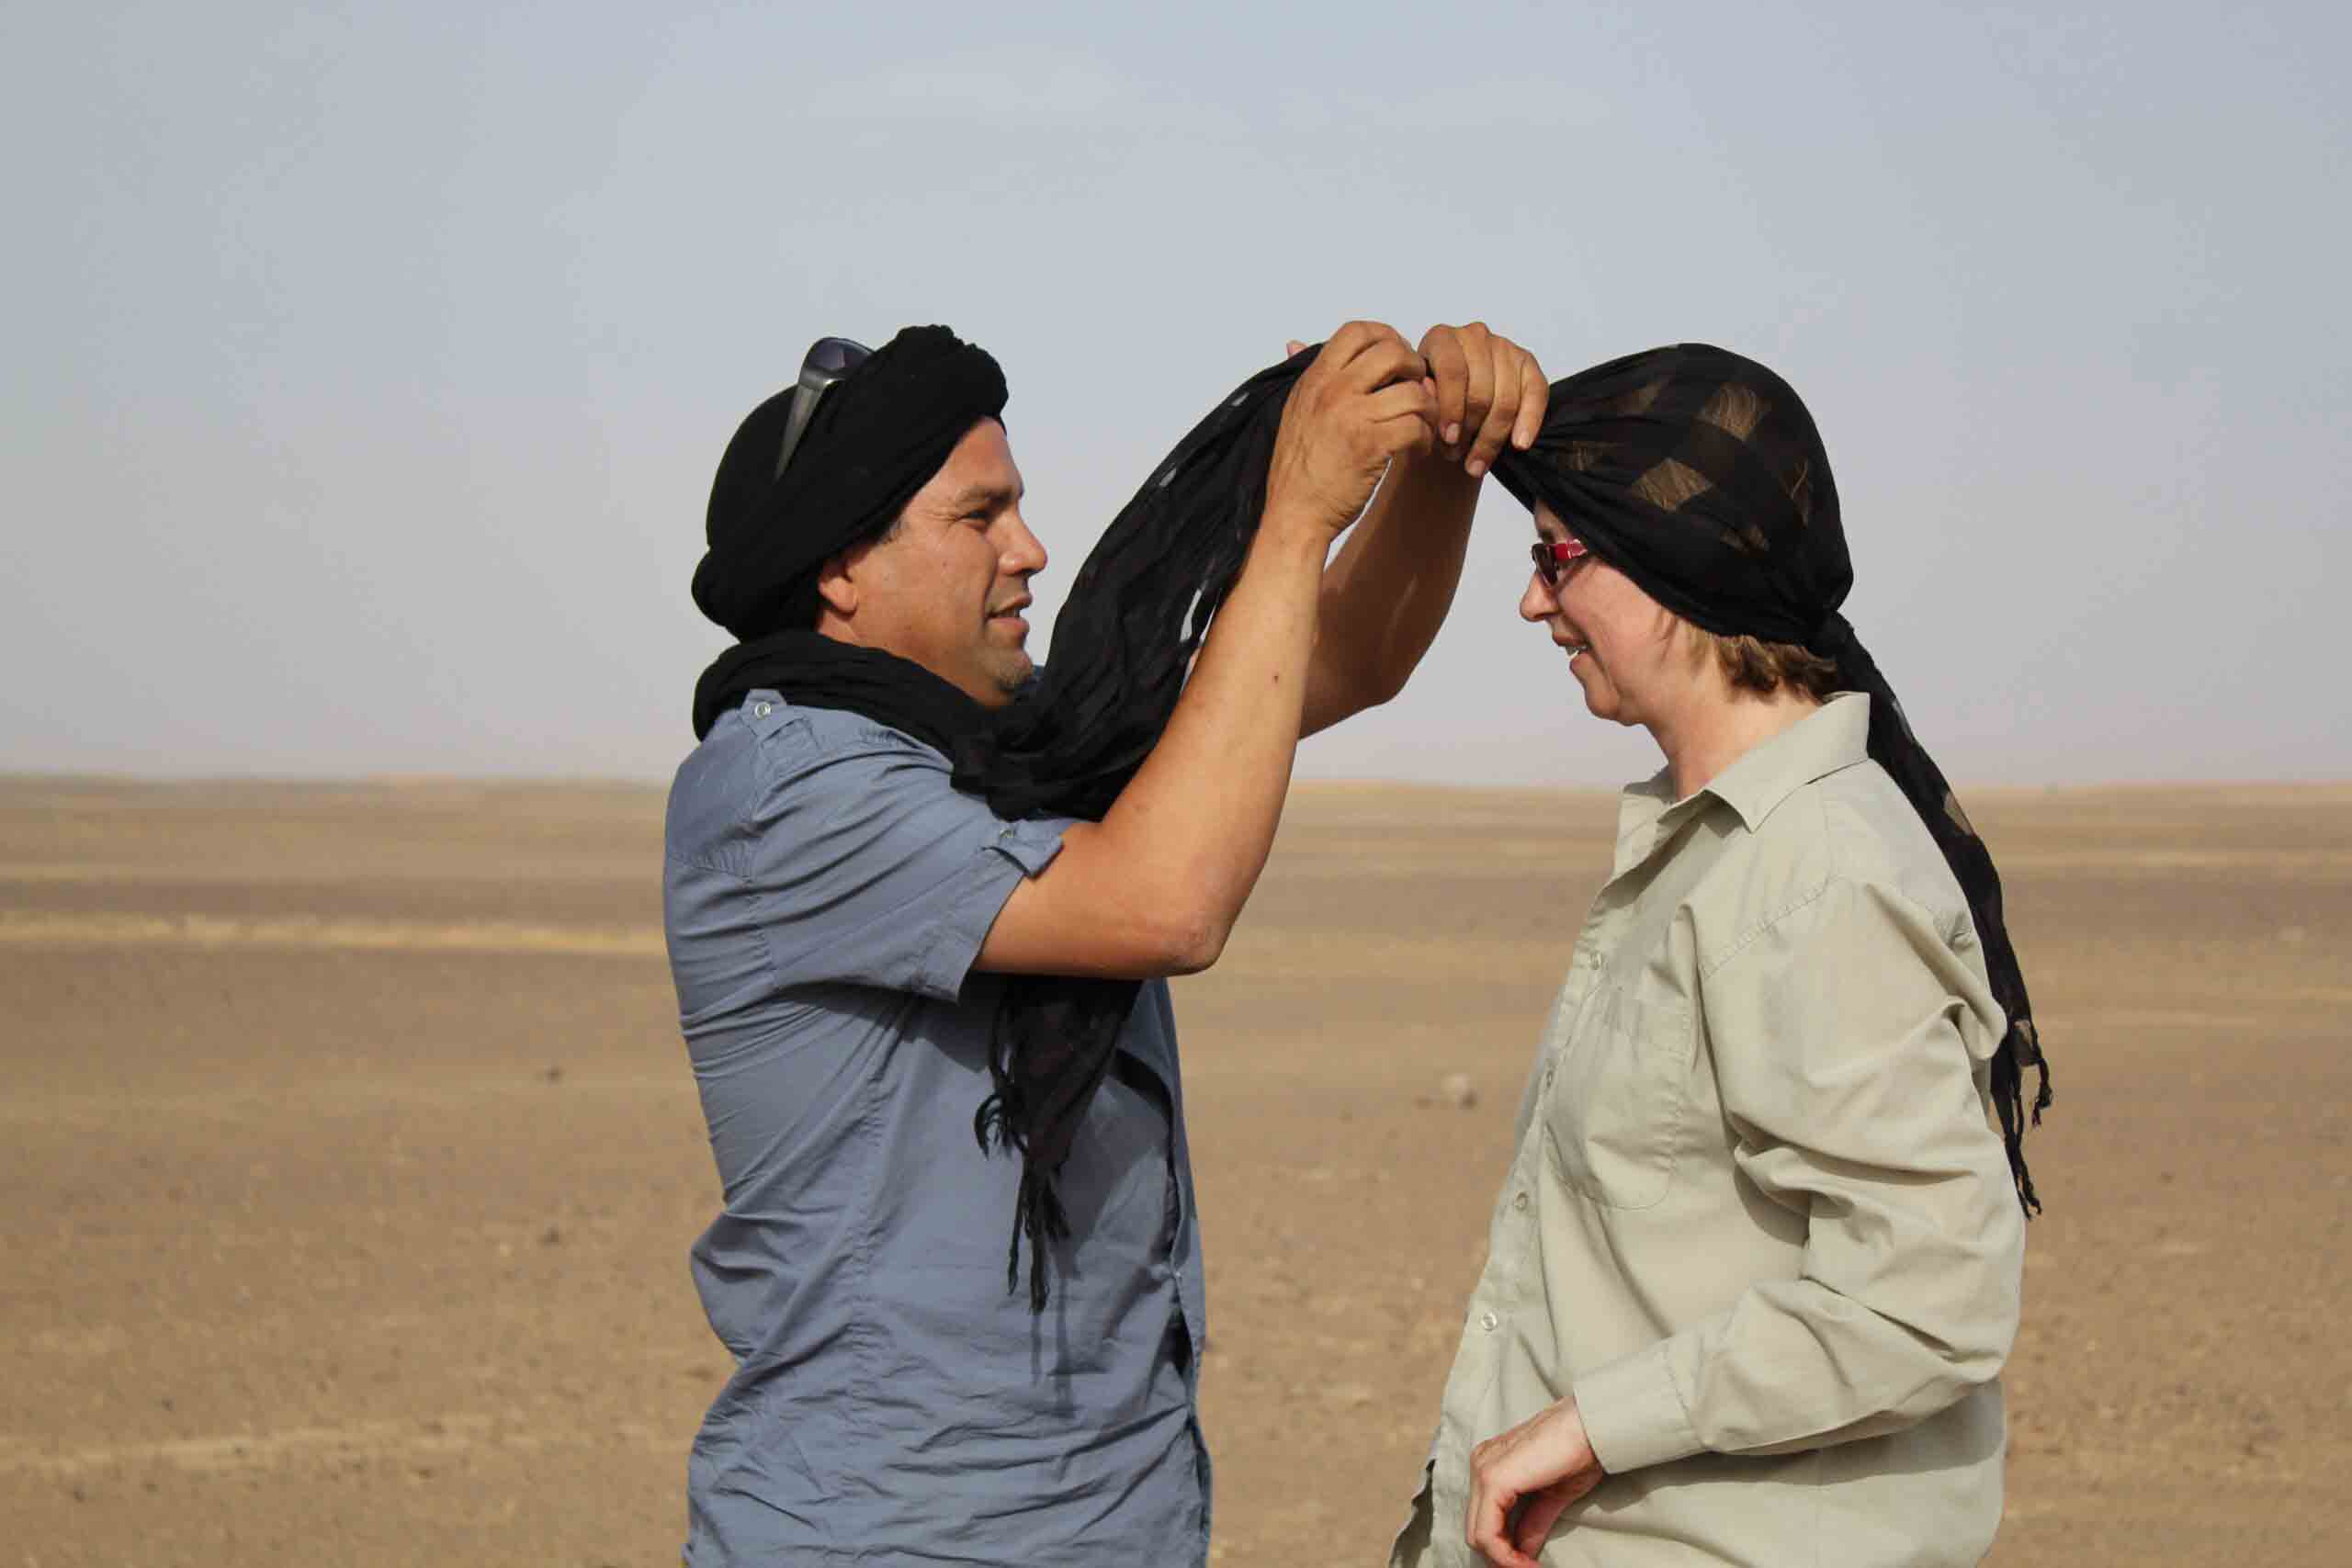 un home marocain couvrant la tête d'une femme blanche avec un foulard noir pour aider avec la chaleur